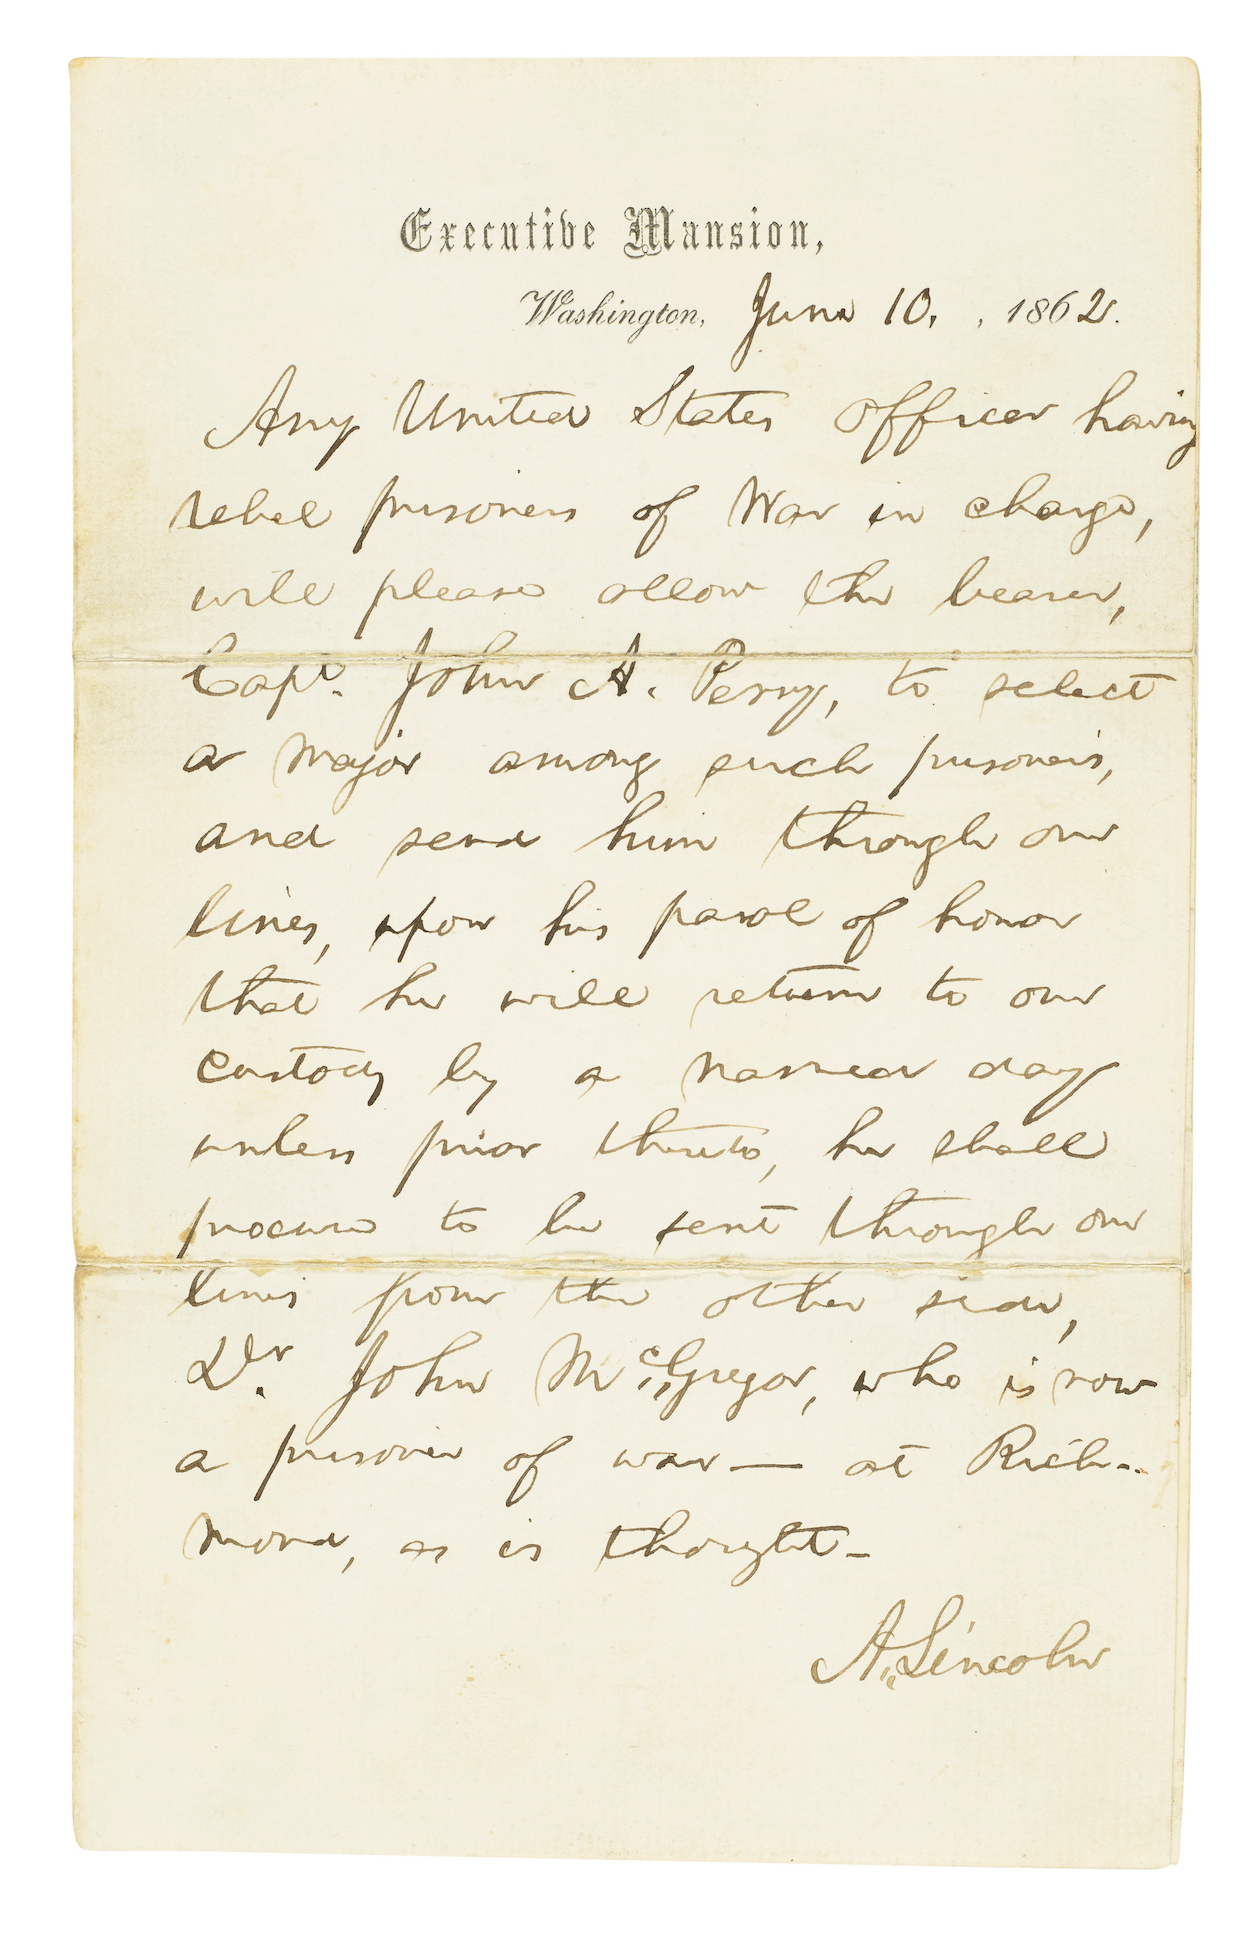 Signed letter from Abraham Lincoln, negotiating a prisoner exchange during the Civil War, est. $12,000-$18,000. Image courtesy of Bonhams